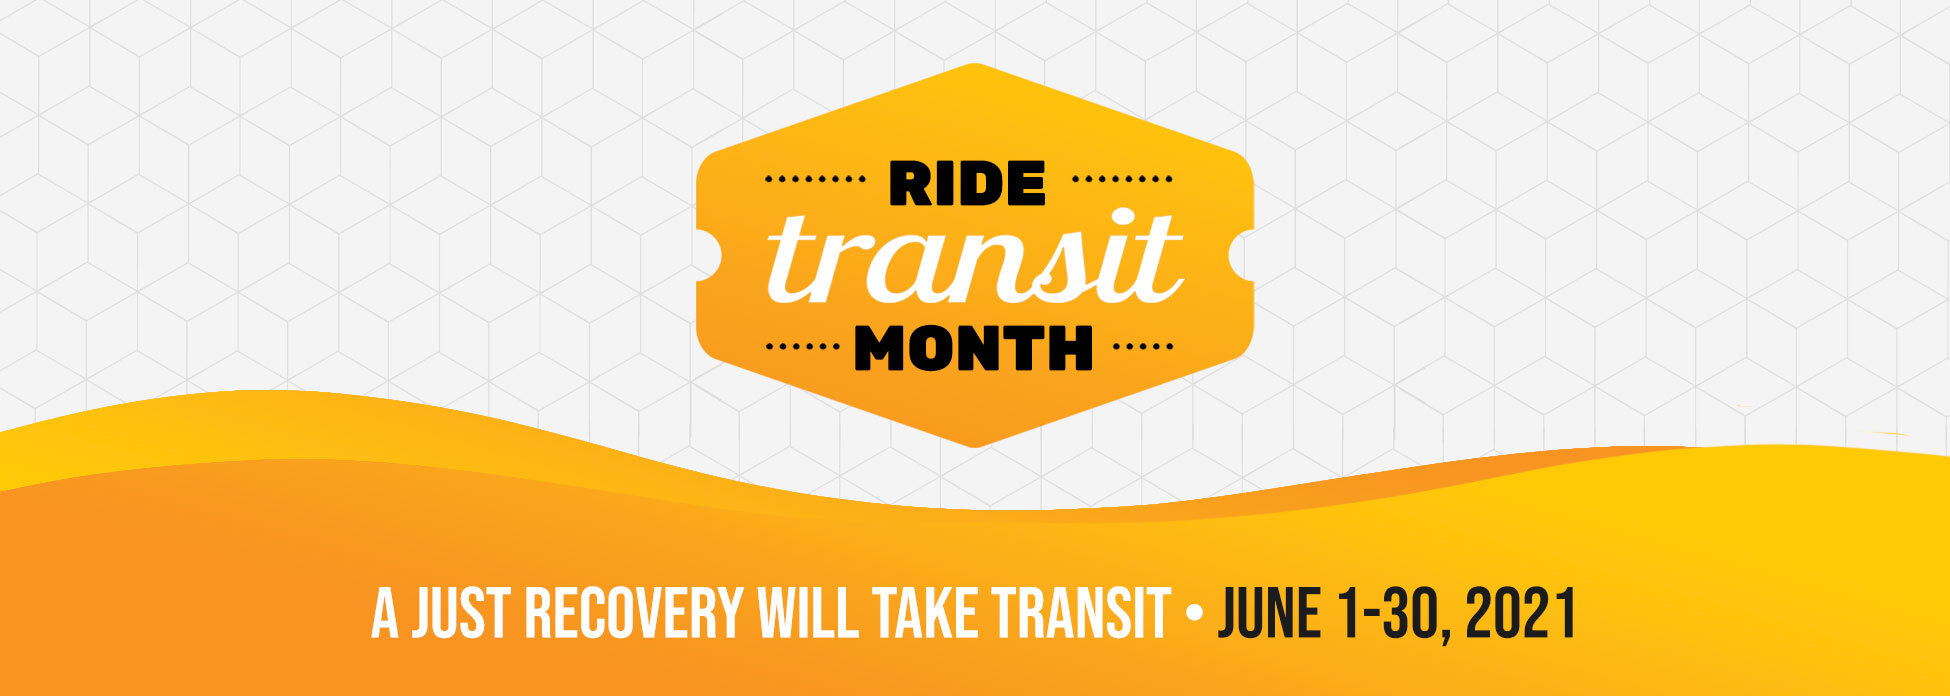 Ride Transit Month